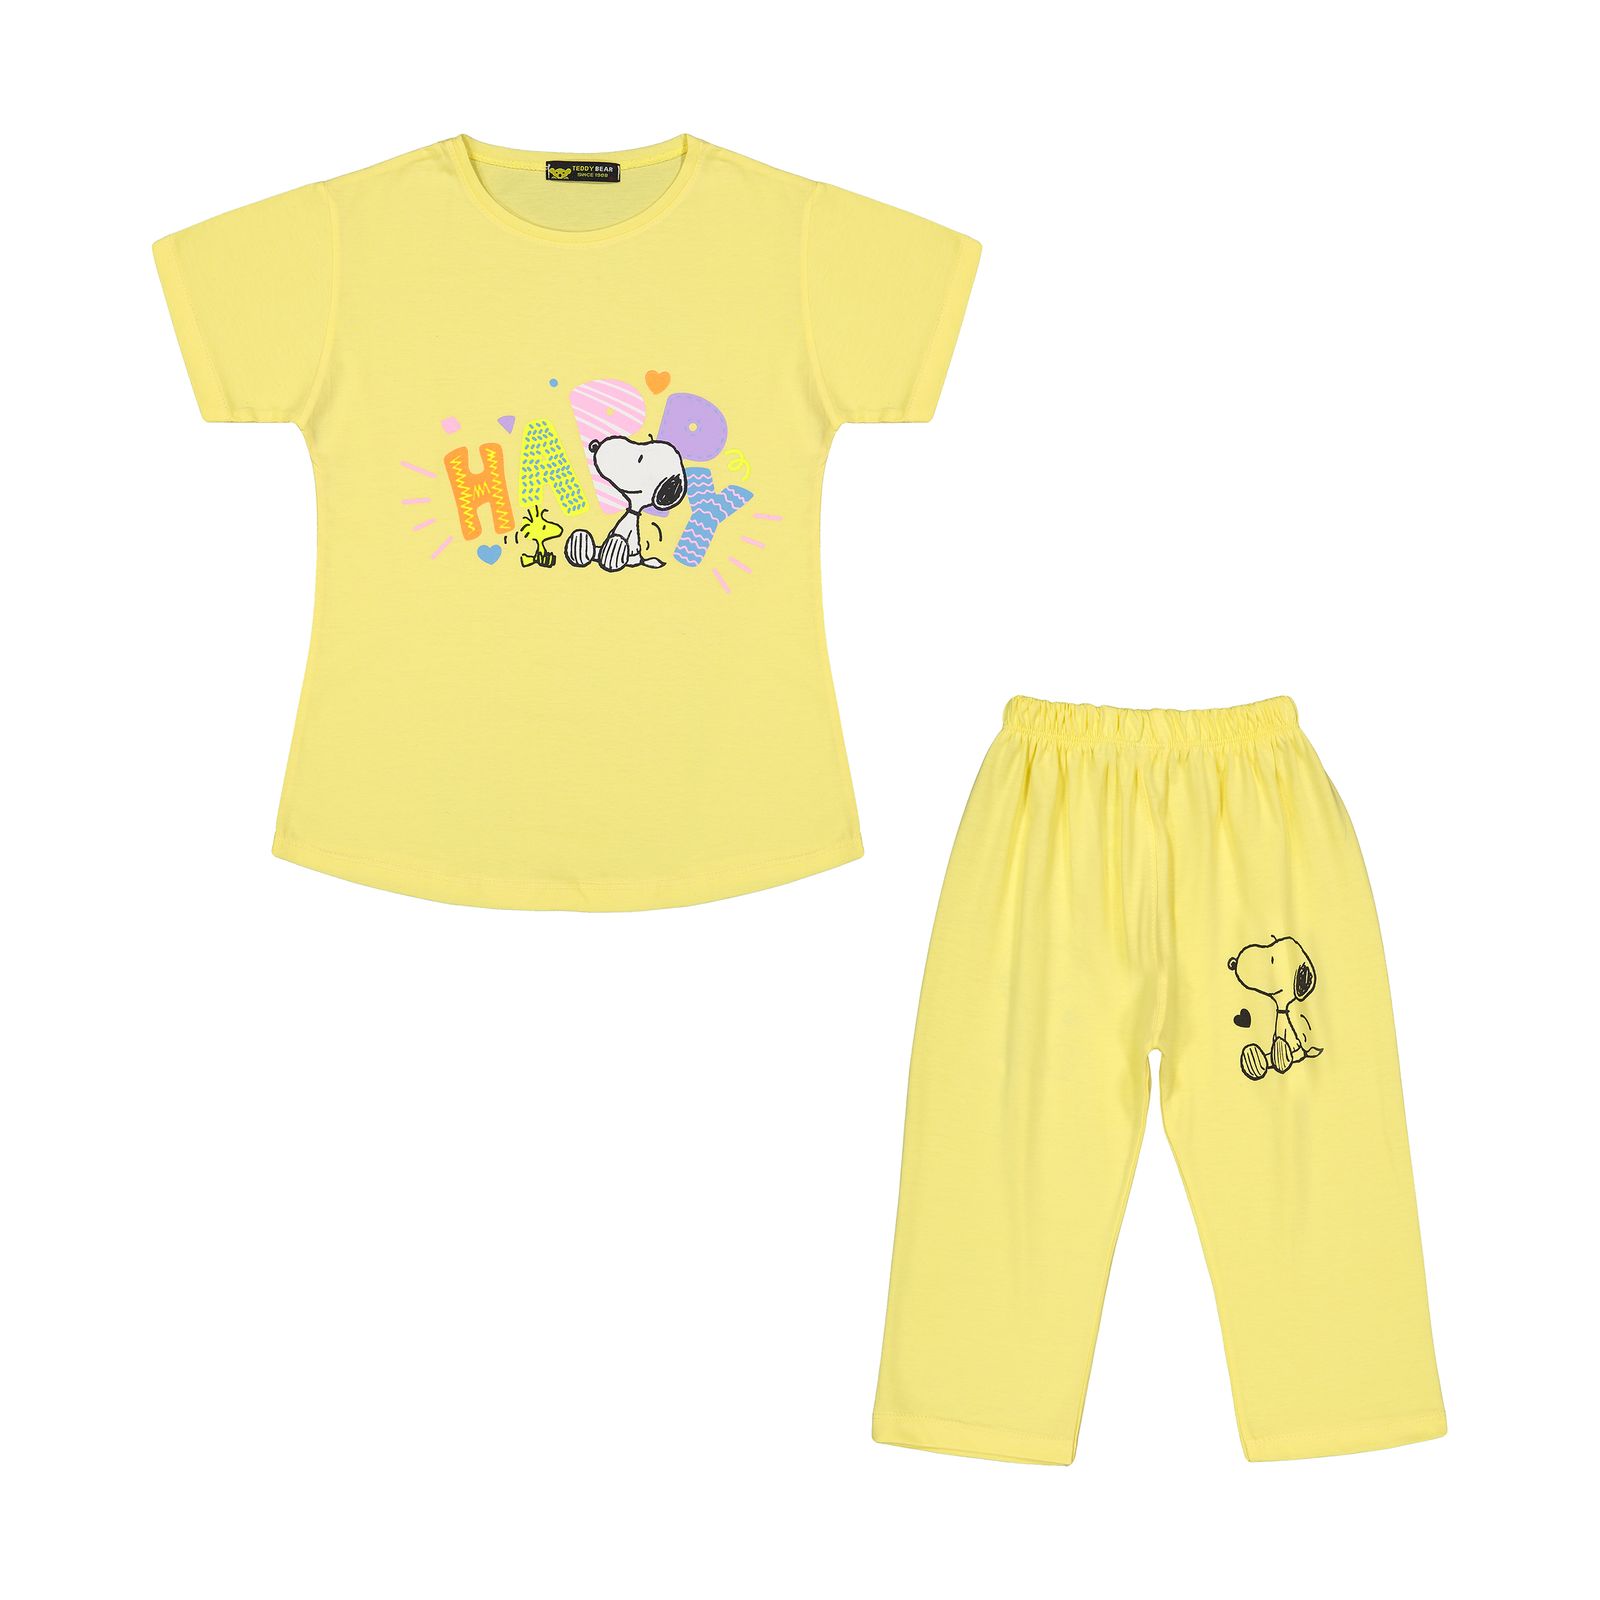 ست تی شرت آستین کوتاه و شلوارک دخترانه خرس کوچولو مدل 2011311-16 -  - 1